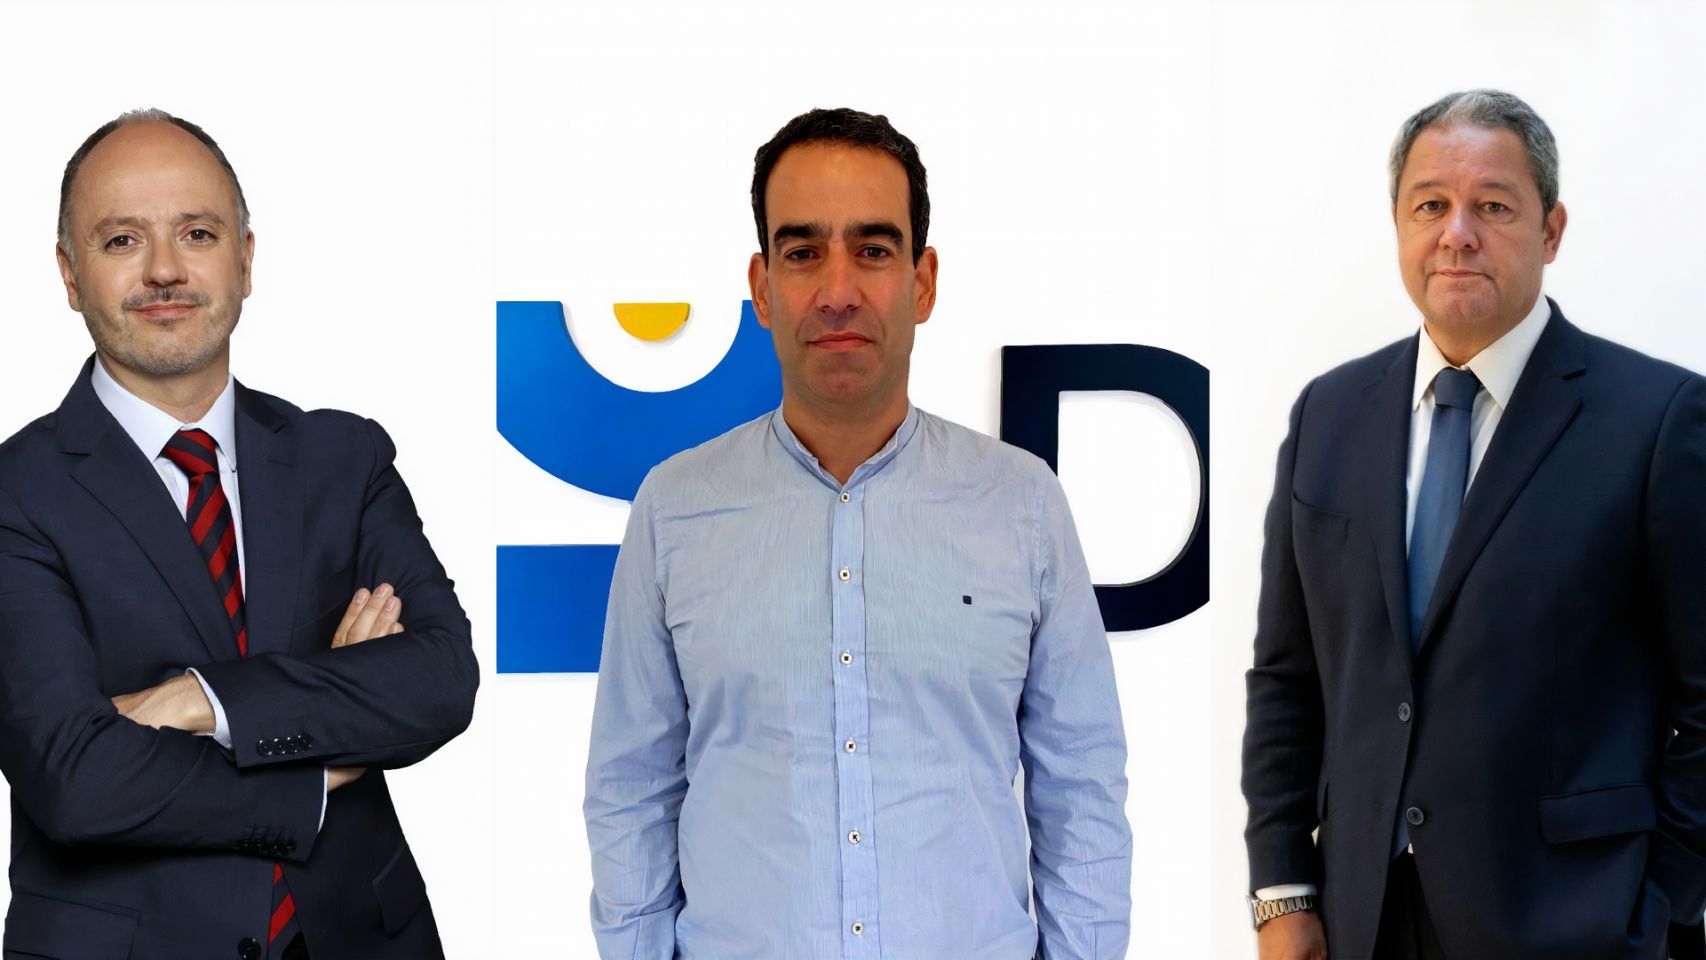 Pié de Foto: De izquierda a derecha, David Regades delegado del Estado en la Zona Franca de Vigo, Brais
Méndez, CEO de Docuten y Tino Fernández presidente de Altia.